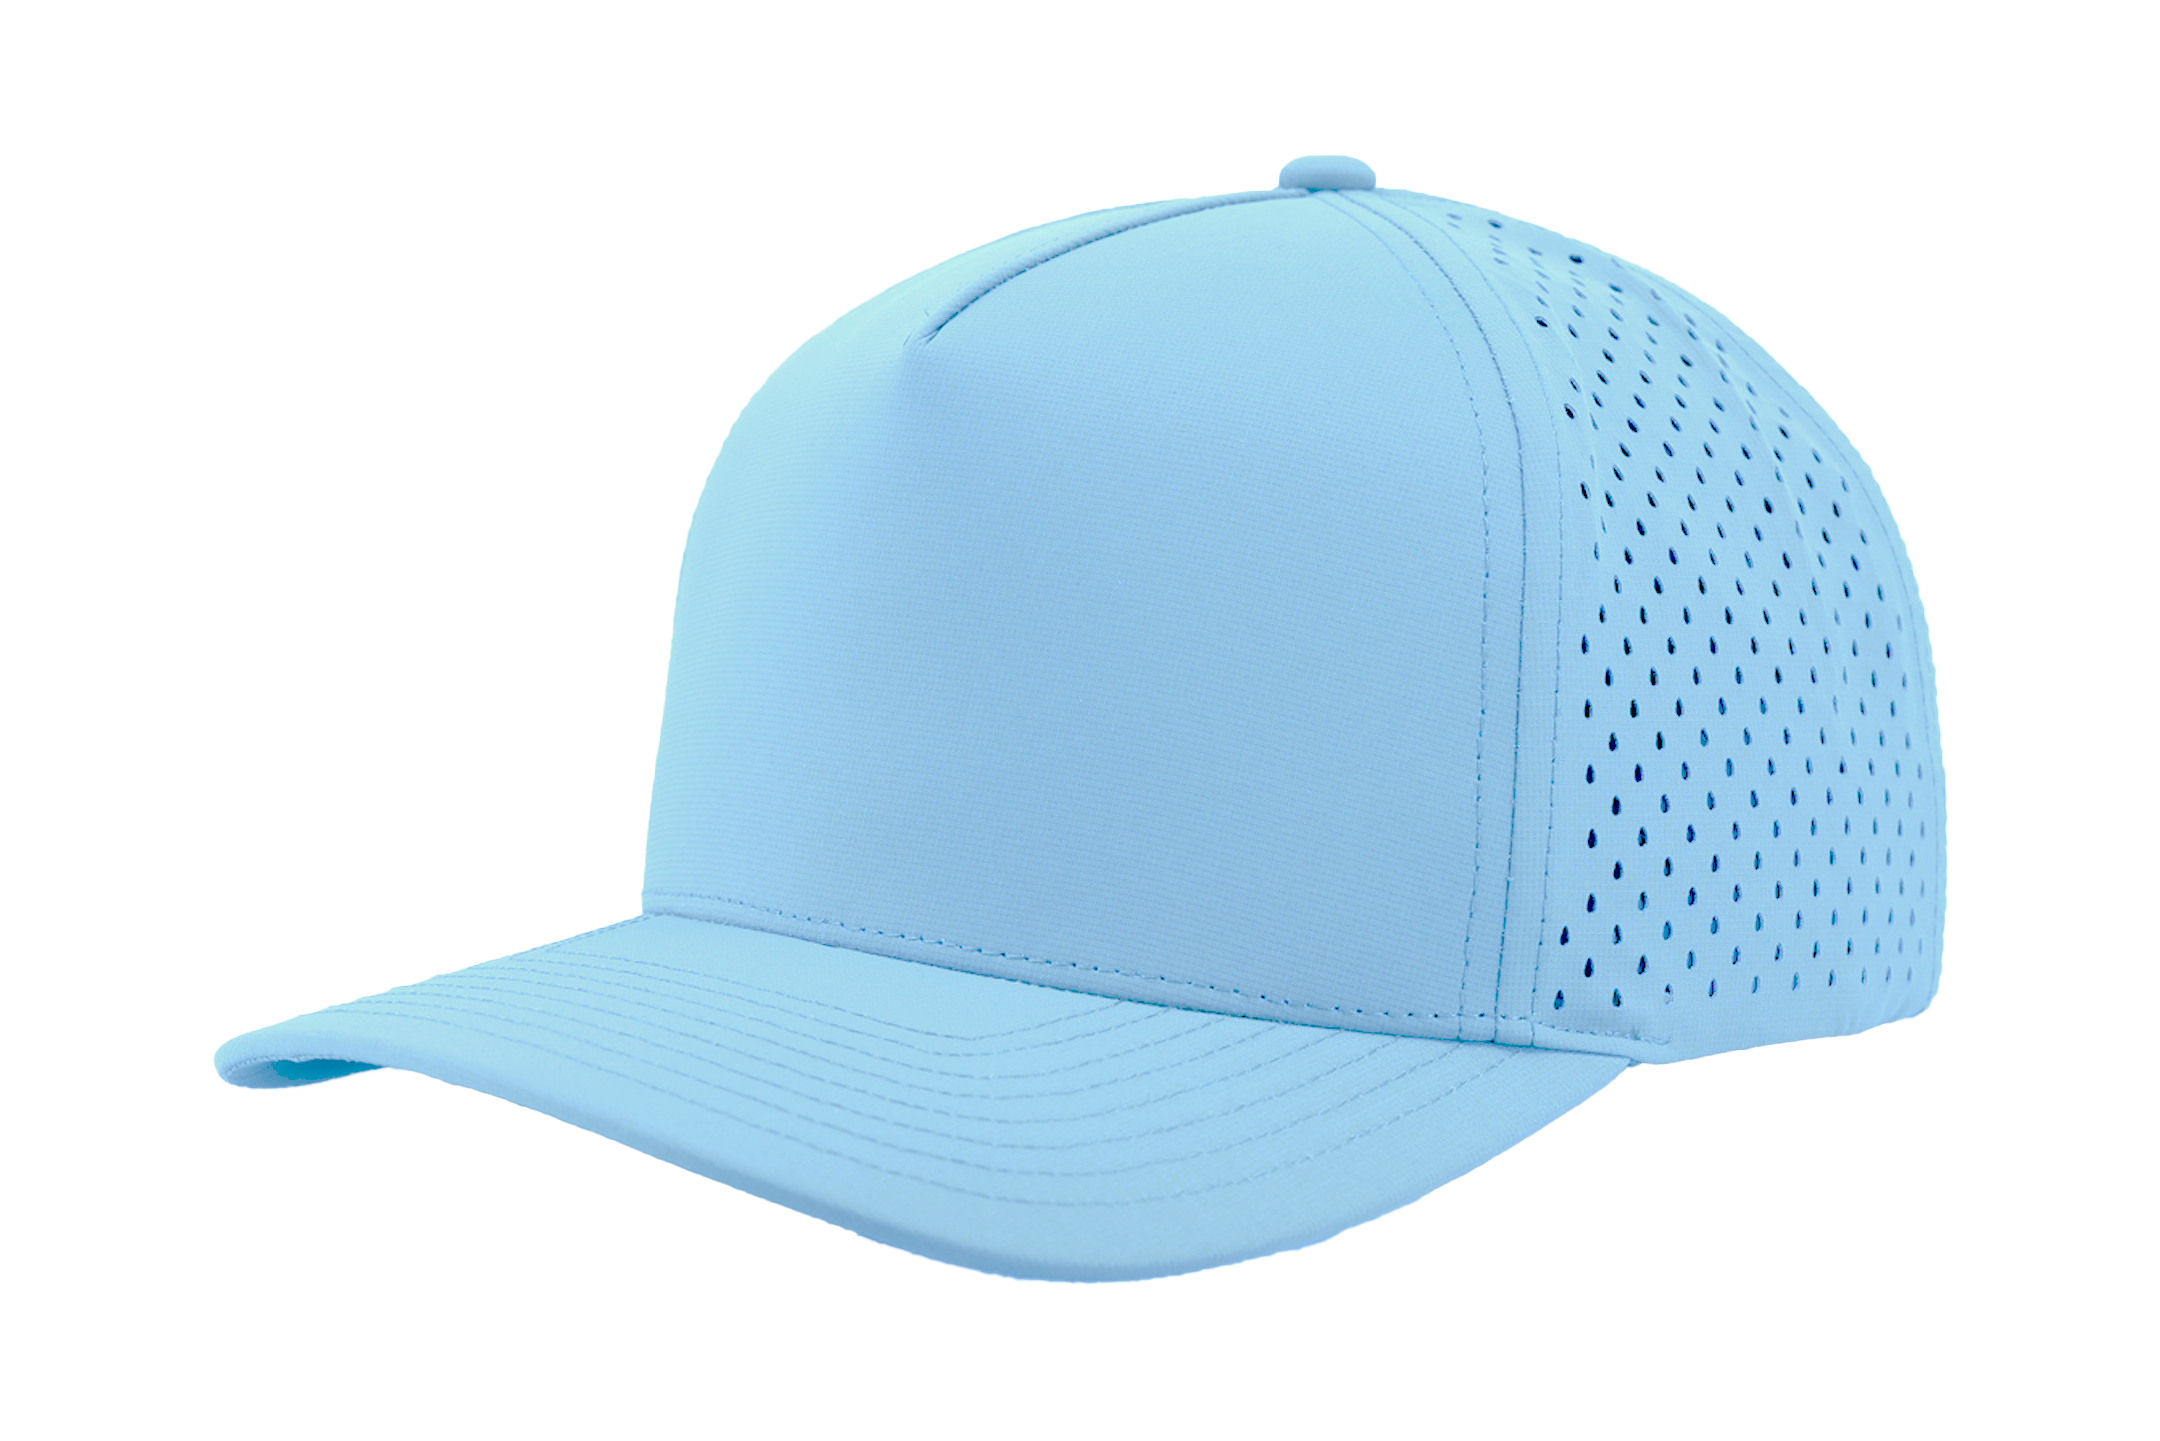 Blackhawk hat, Premium custom 5 panel hat